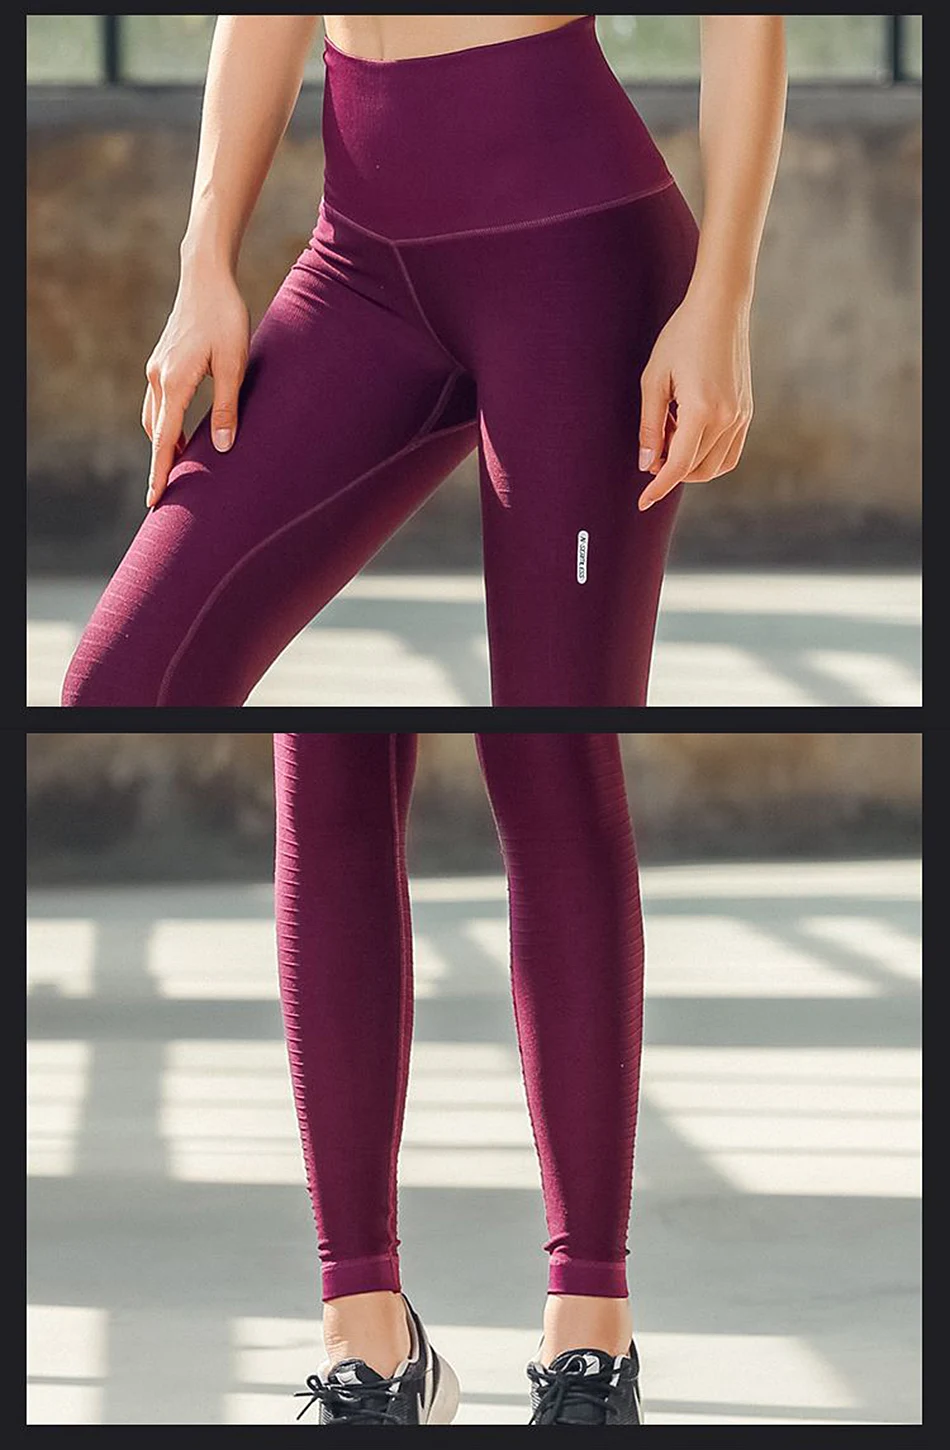 BLESSKISS/штаны для йоги с высокой талией, спортивные Леггинсы для фитнеса, женские эластичные лосины Lulu для бега и велоспорта, одежда, спортивные штаны синего цвета